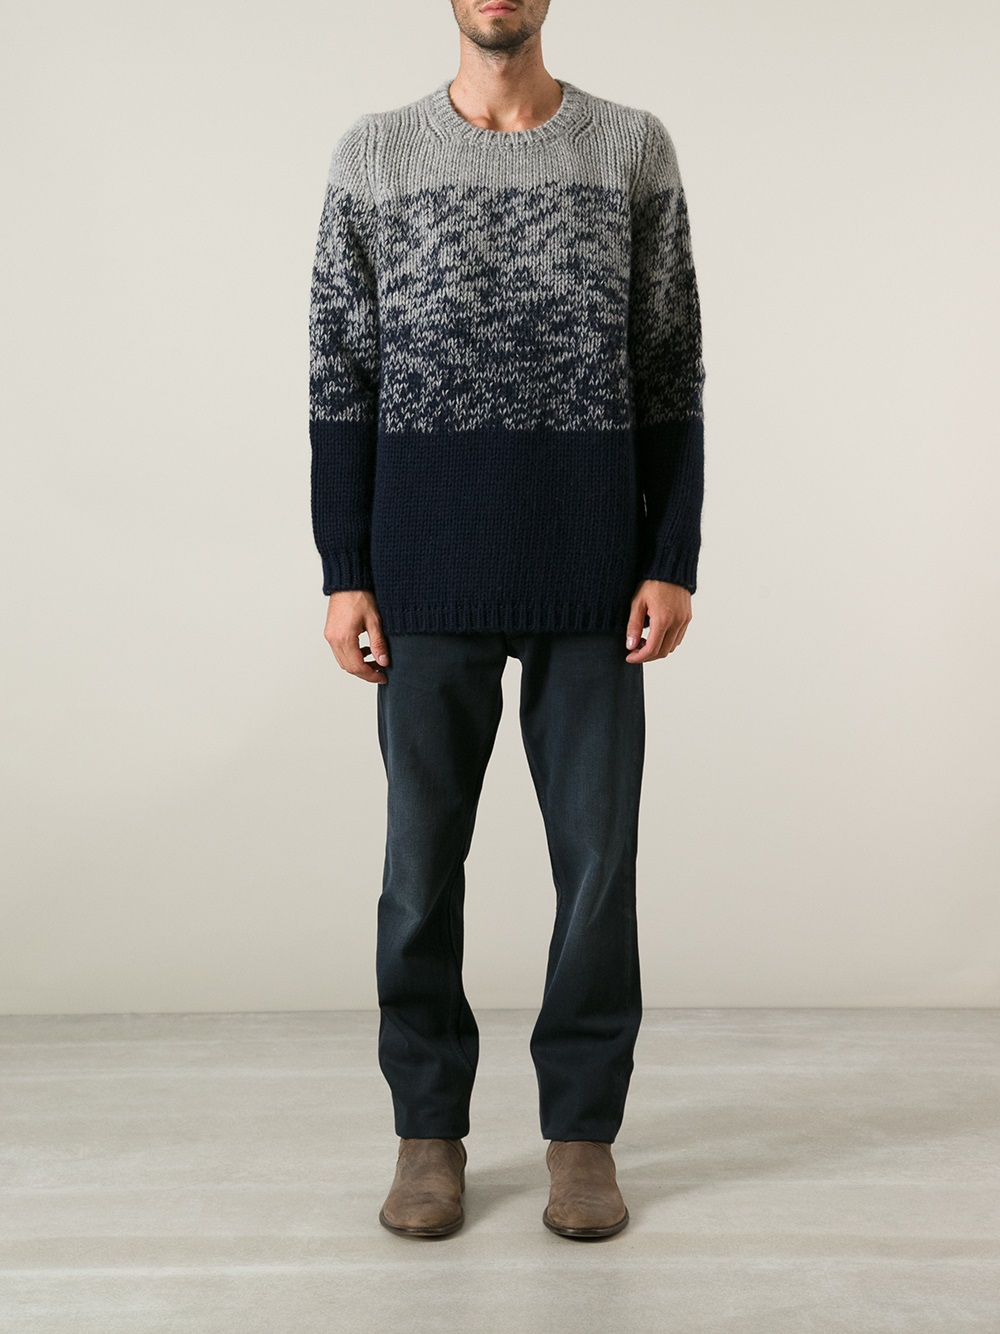 Lyst - Jil Sander Gradient Knit Sweater in Gray for Men